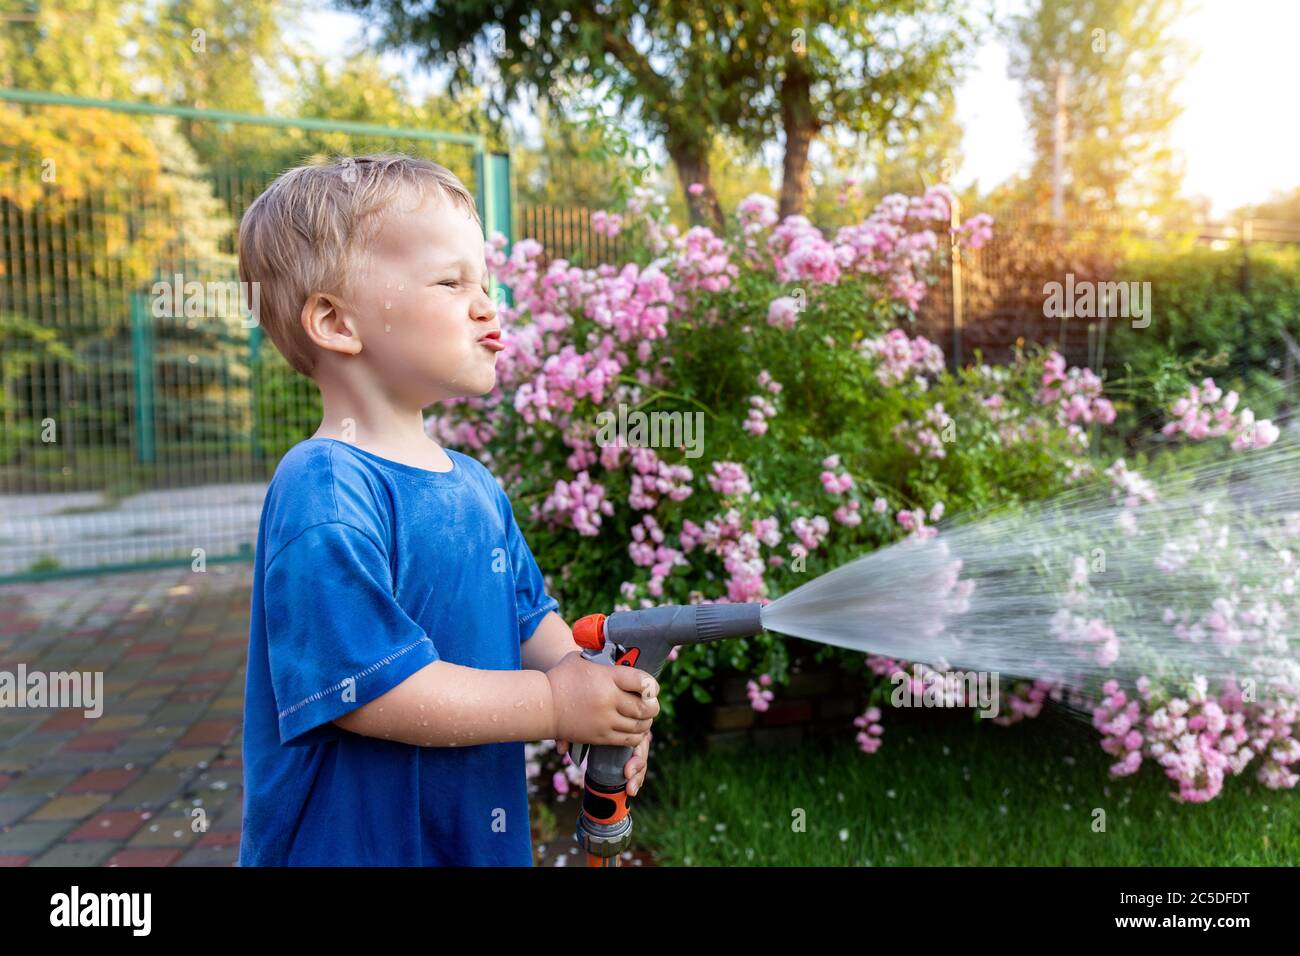 Nette liebenswert kaukasischen blonde Kleinkind Junge genießen Spaß  Bewässerung Garten Blume und Rasen mit Schlauchleitung Sprinkler zu Hause  Hinterhof an sonnigen Tag Stockfotografie - Alamy